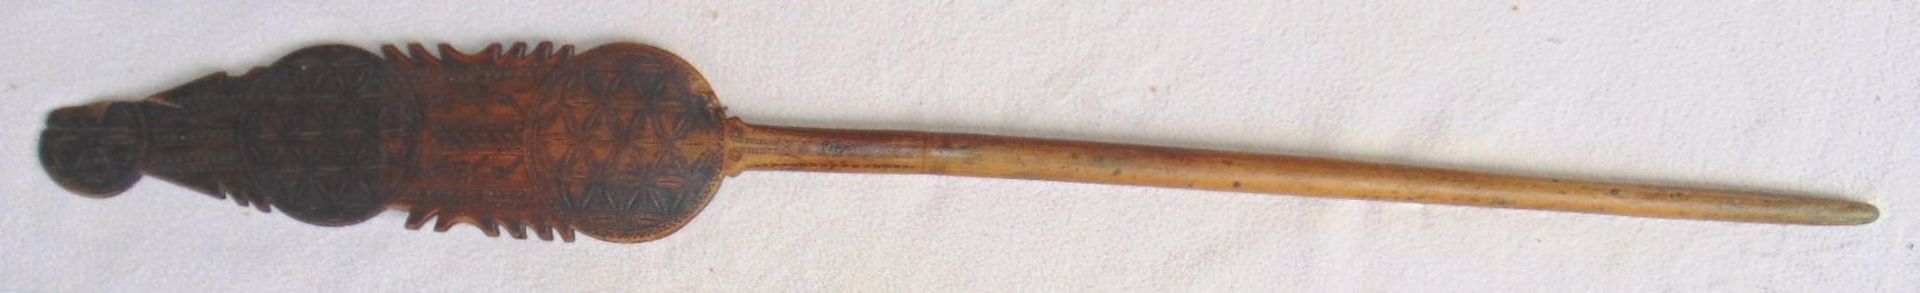 Holz-Fadenhalter oder ähnliches, beschnitzt, wohl 18.Jhd., seitl. Abplatzer, L-85 c- - -22.61 %